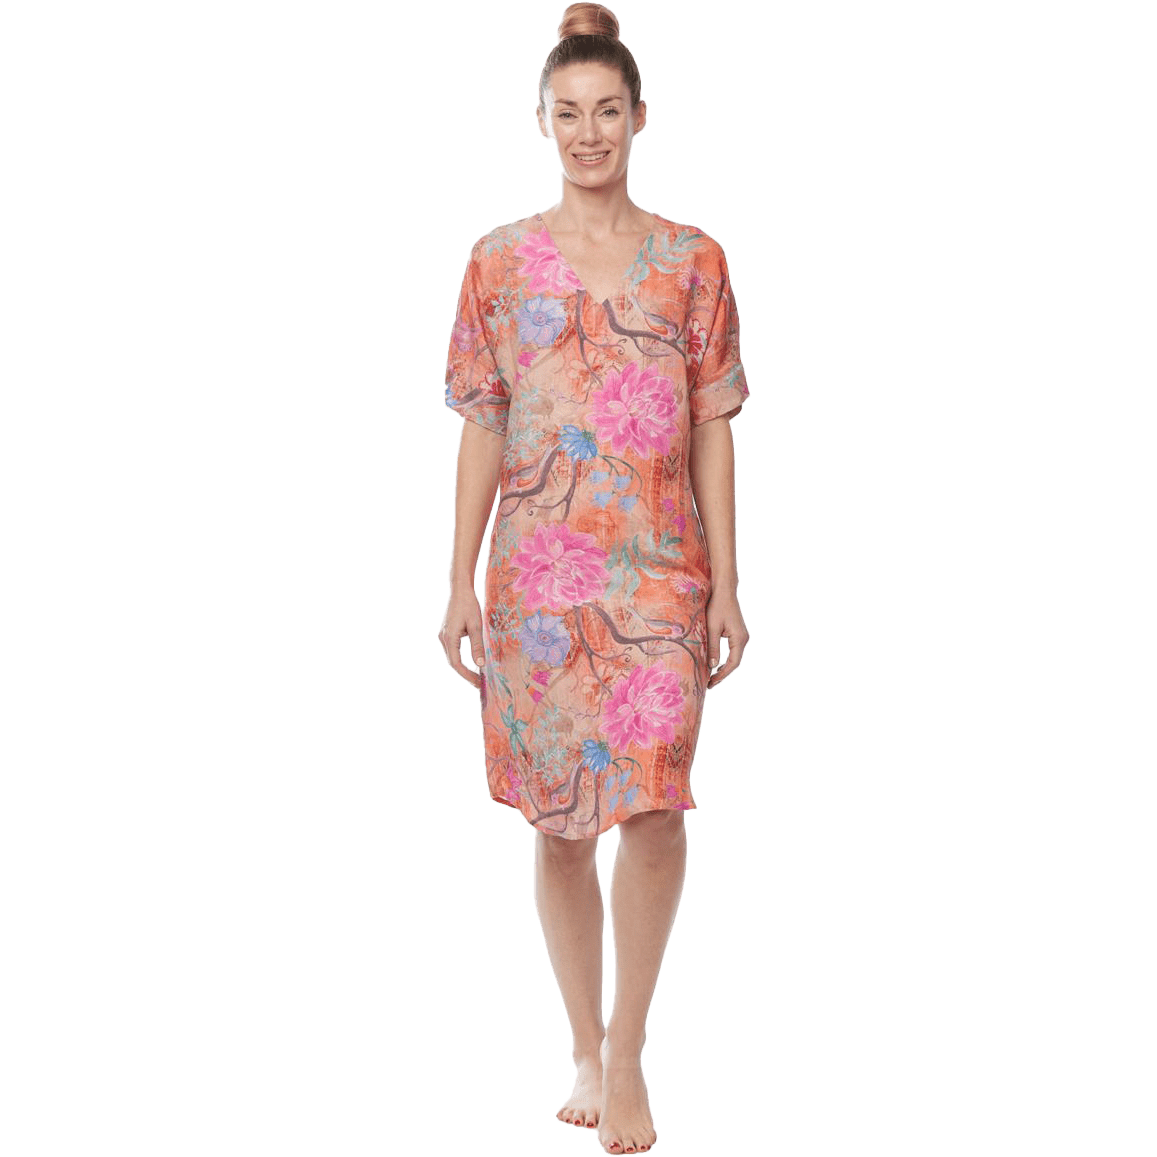 Claire Powell V Neck Dress Design Botanical